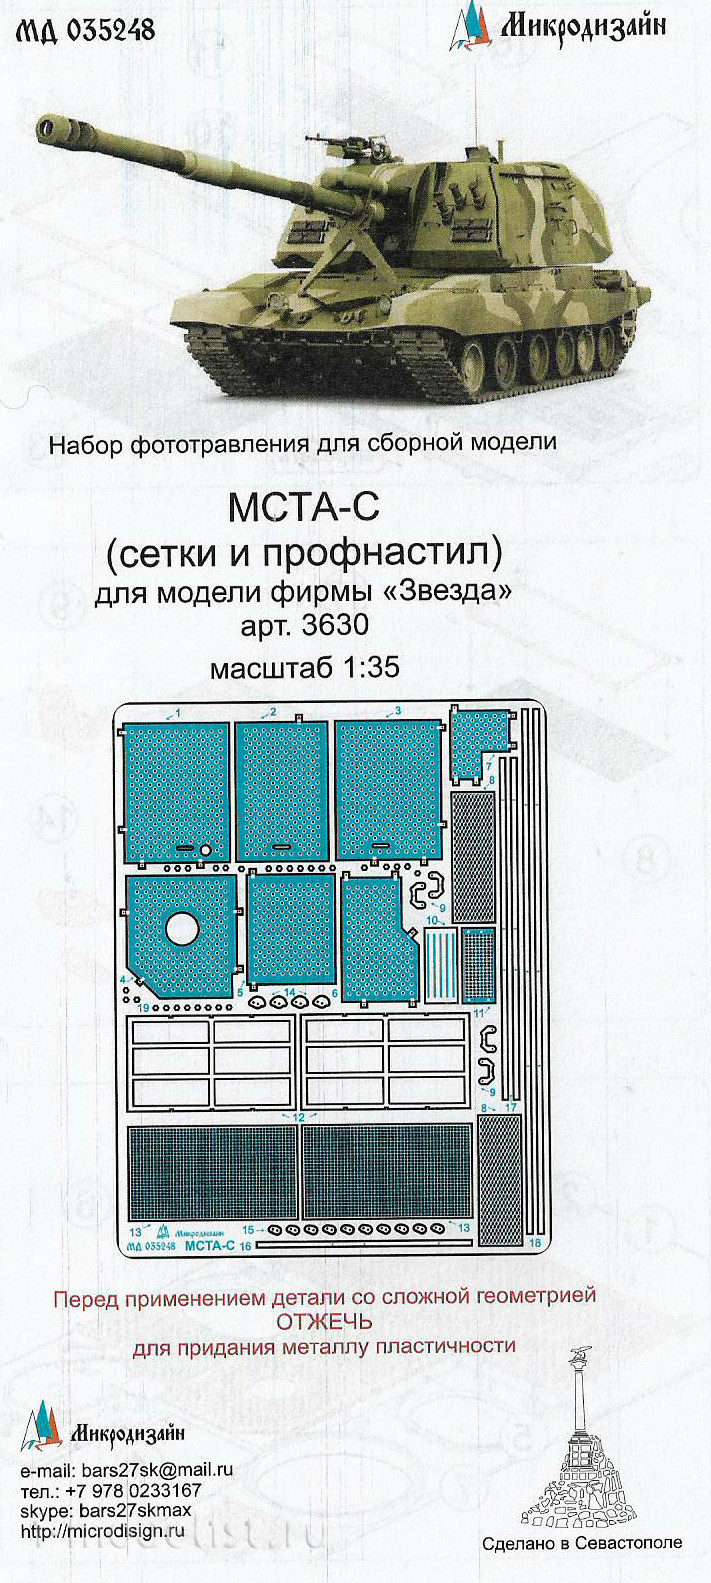 035248 Microdesign 1/35 MSTA-S. Nets (Zvezda)